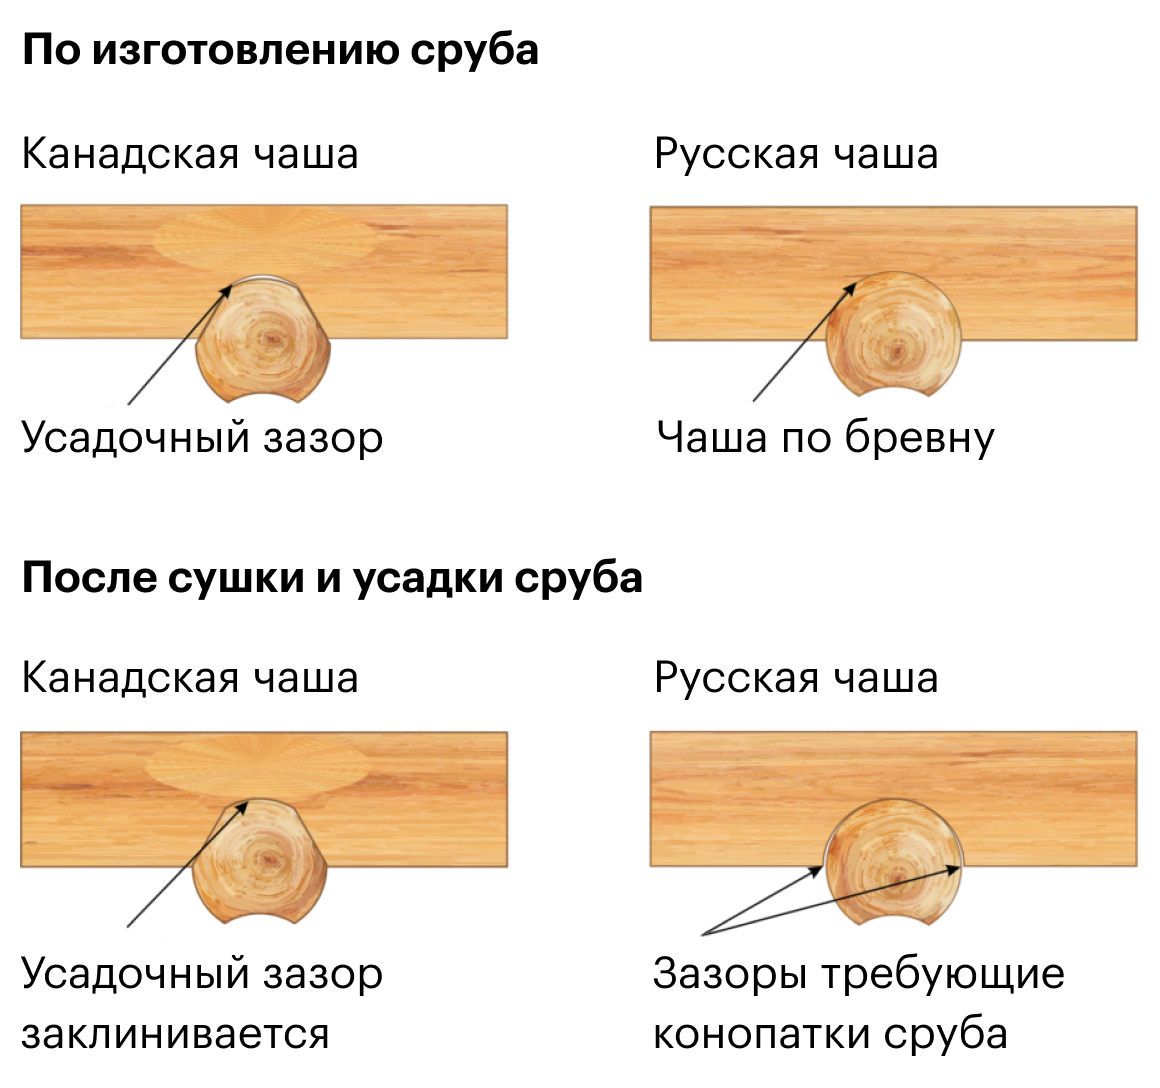 Разница между канадской и русской рубкой. Источник: smolsrubtorg.ru